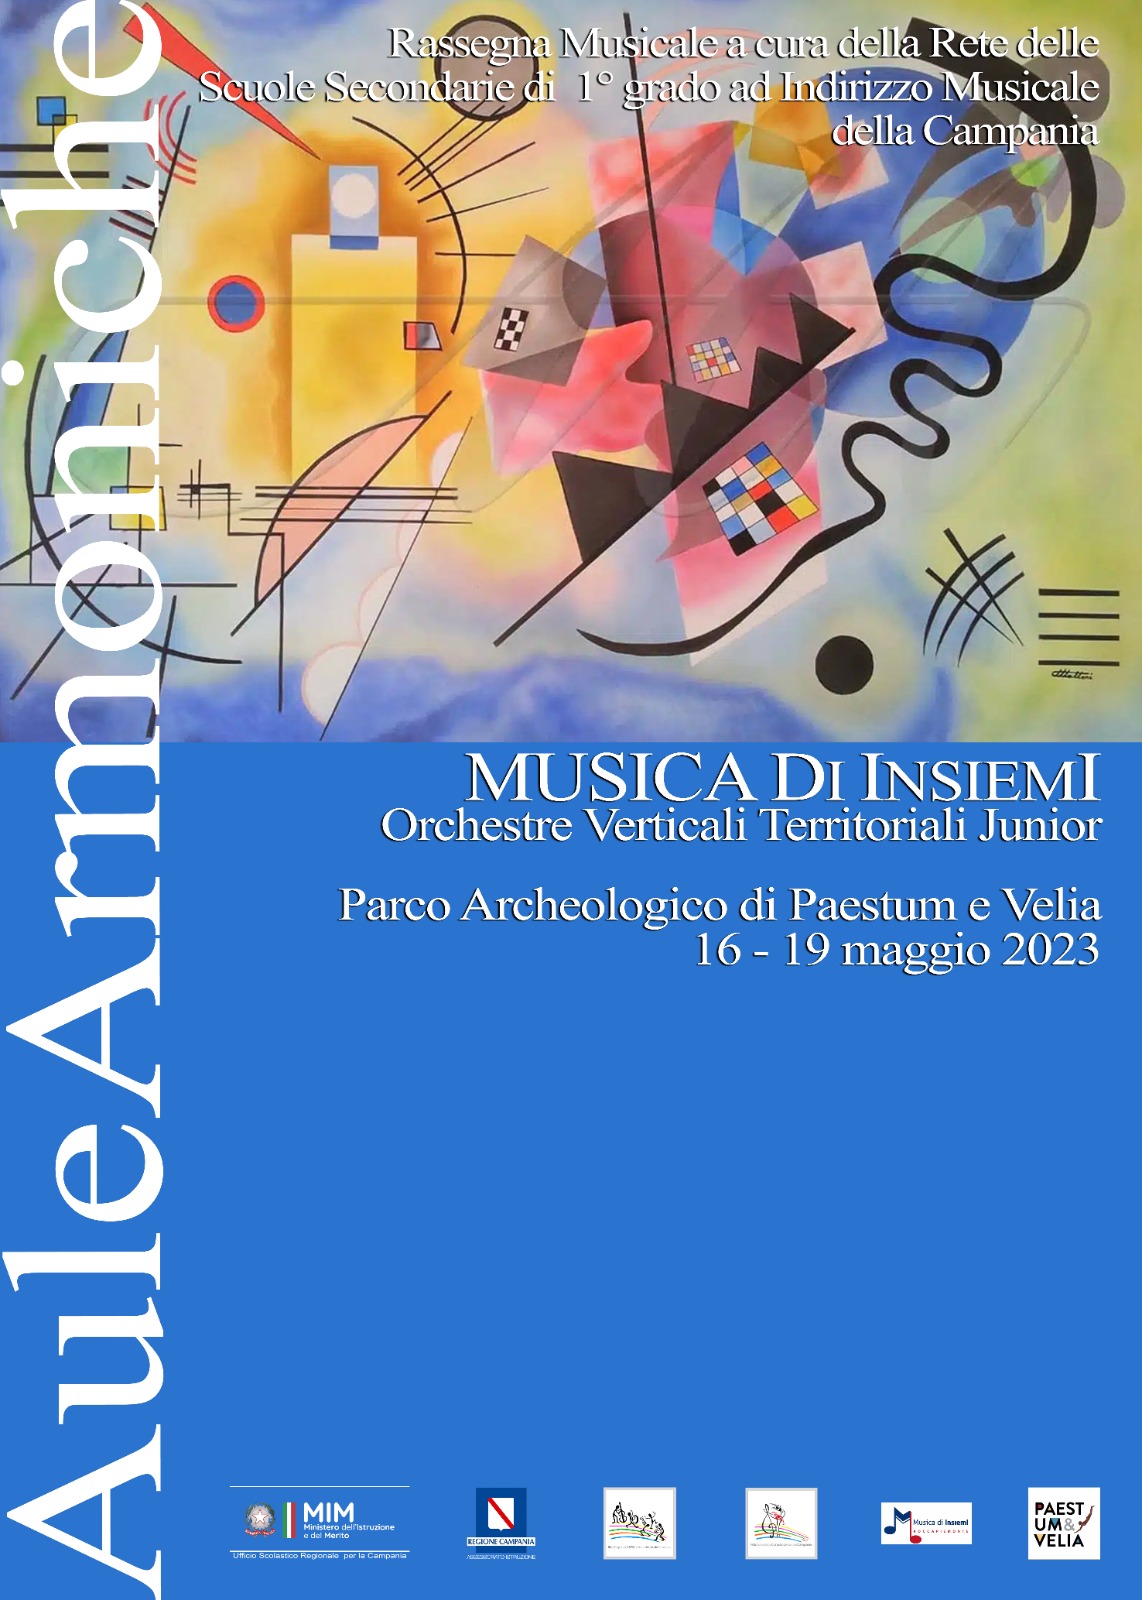 Paestum: Musica di InsiemI, orchiestre verticali territoriali a Parco Archeologico